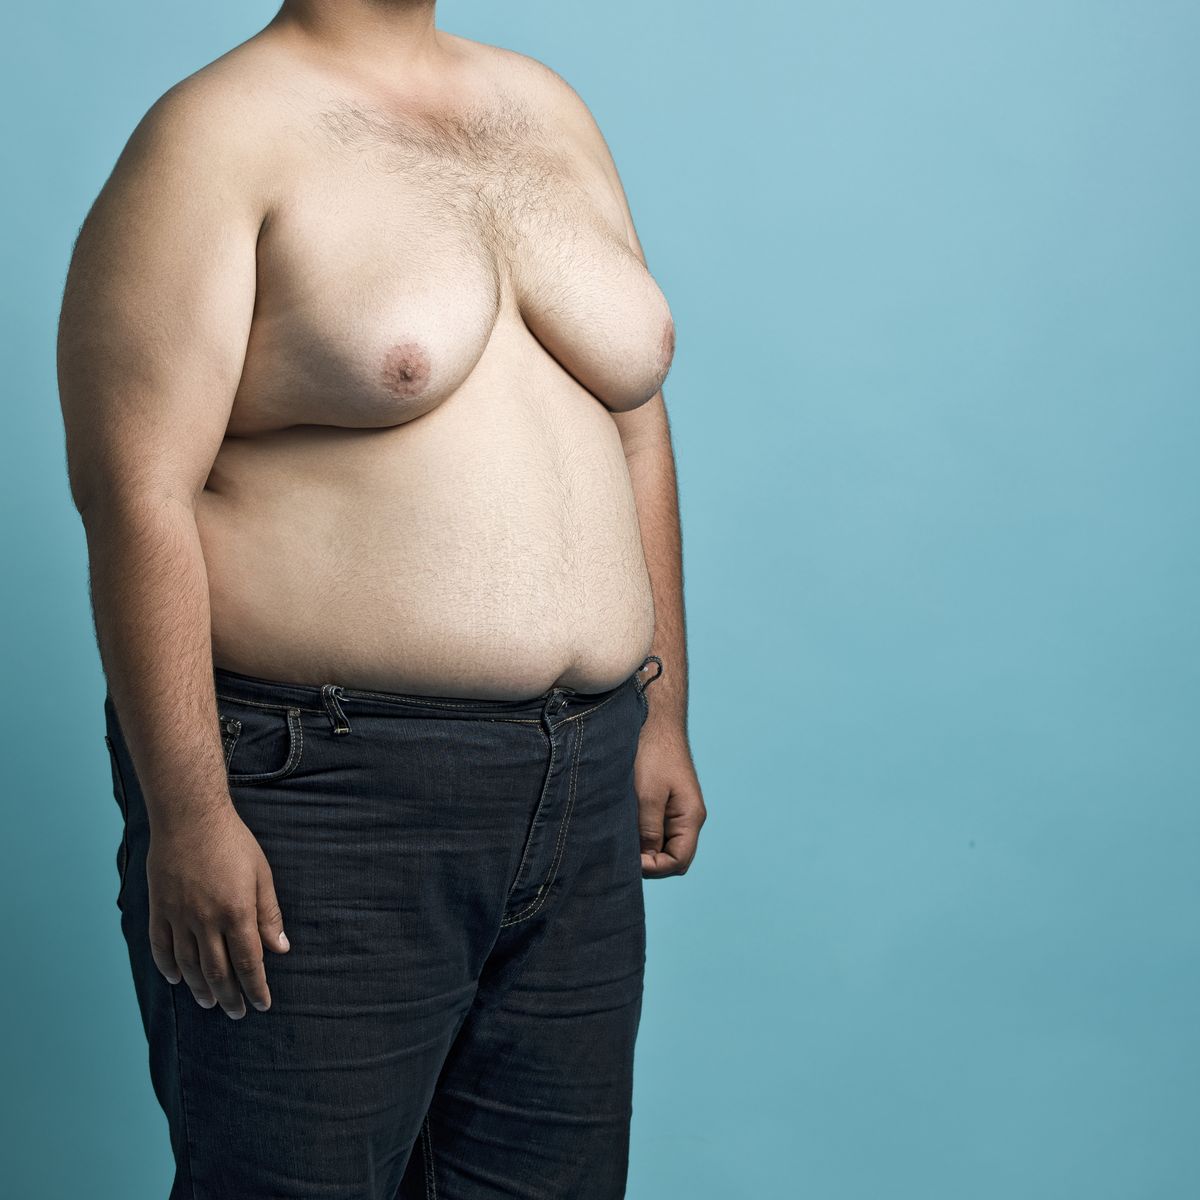 форум мужчин о груди женщин фото 34